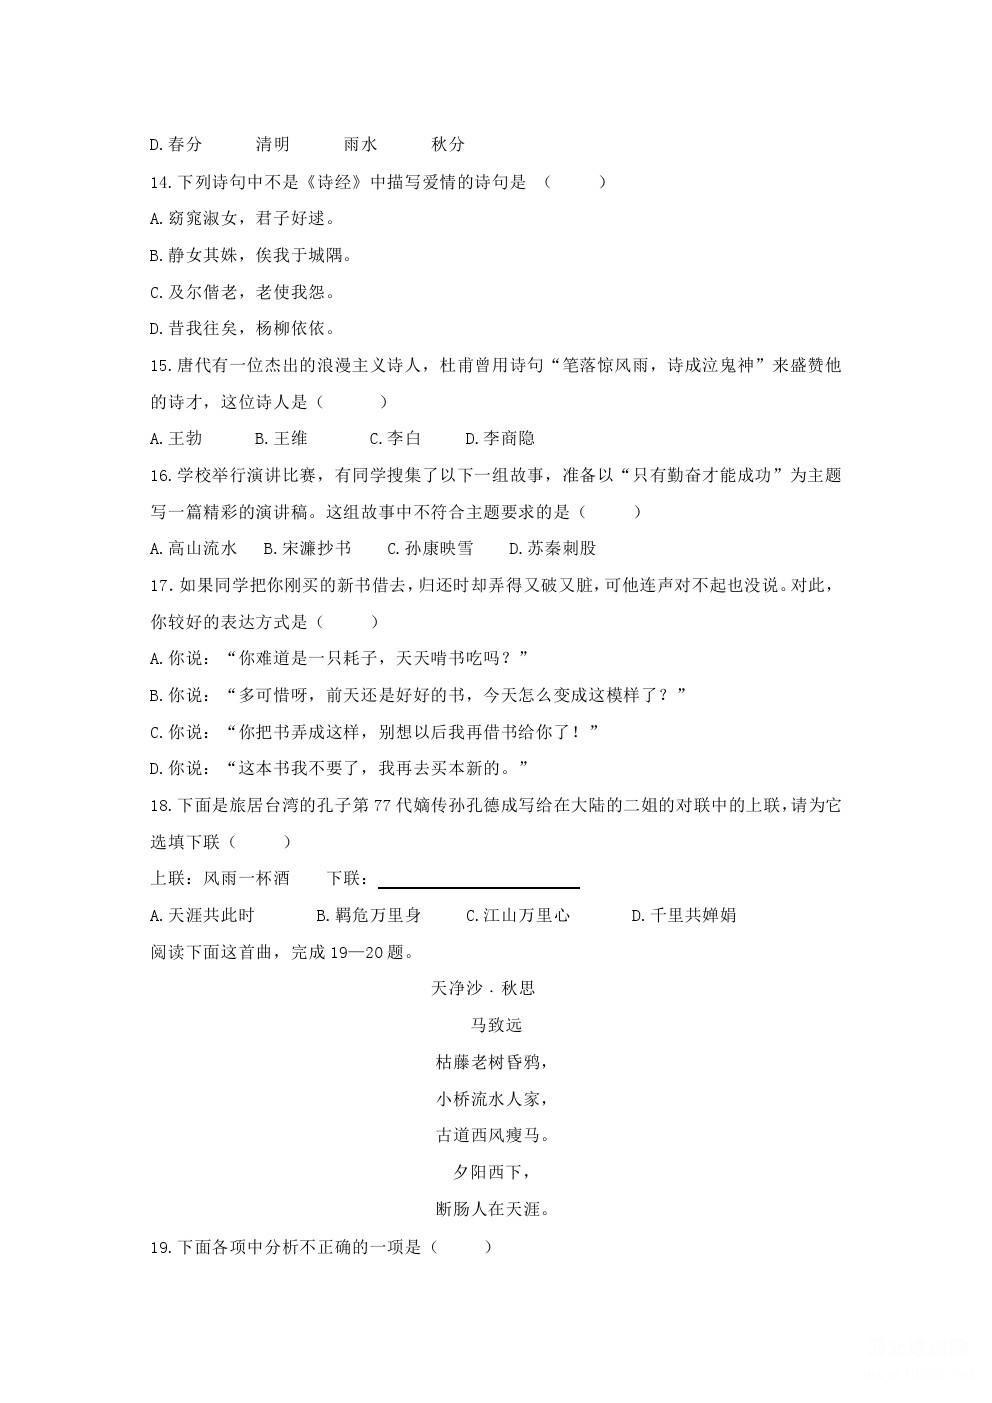 2019年河北省高职单招考试四类文化素质考试试题（语文、数学）